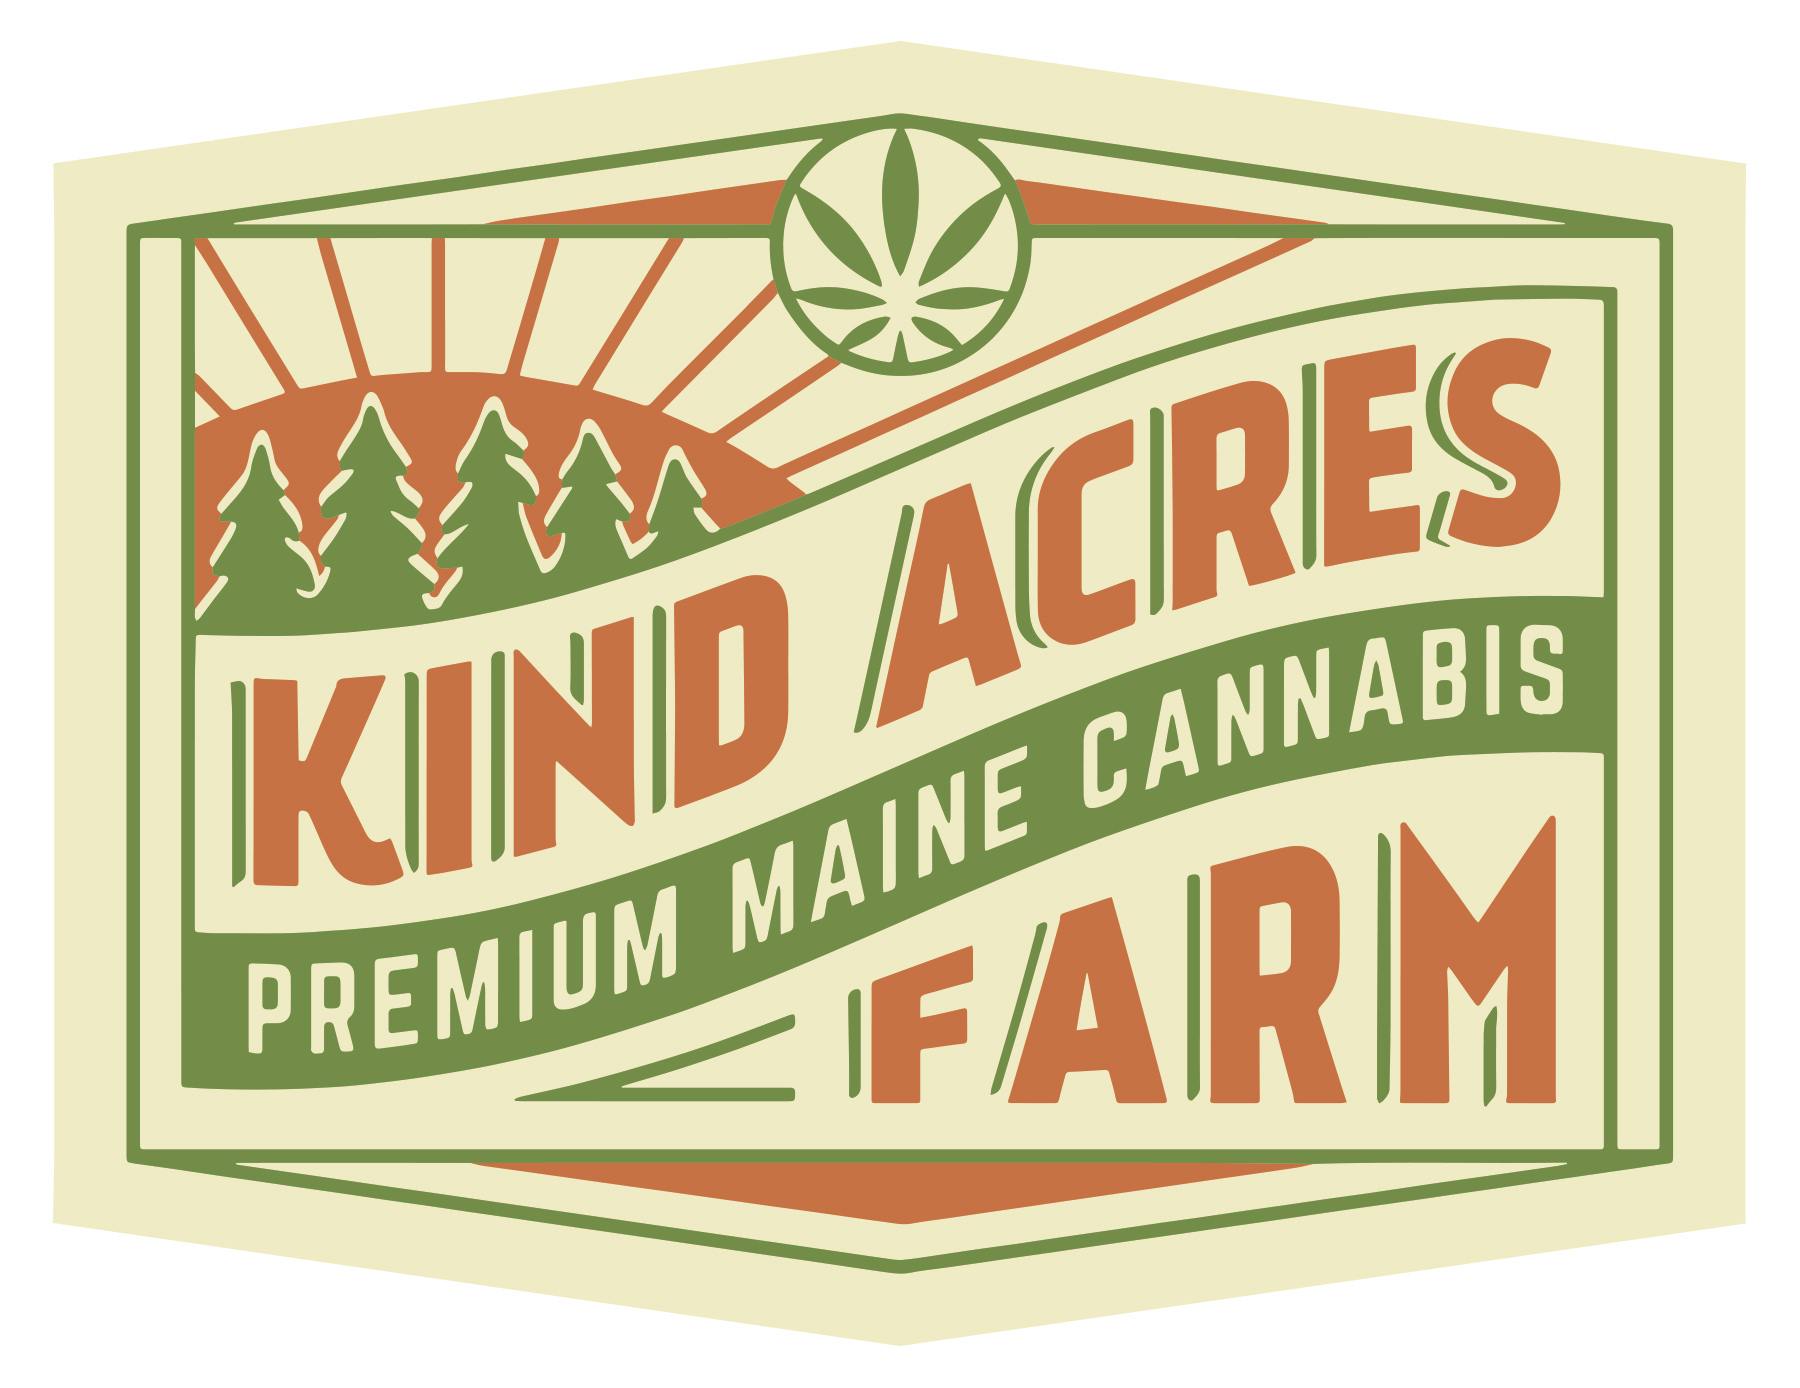 Kind Acres Farm